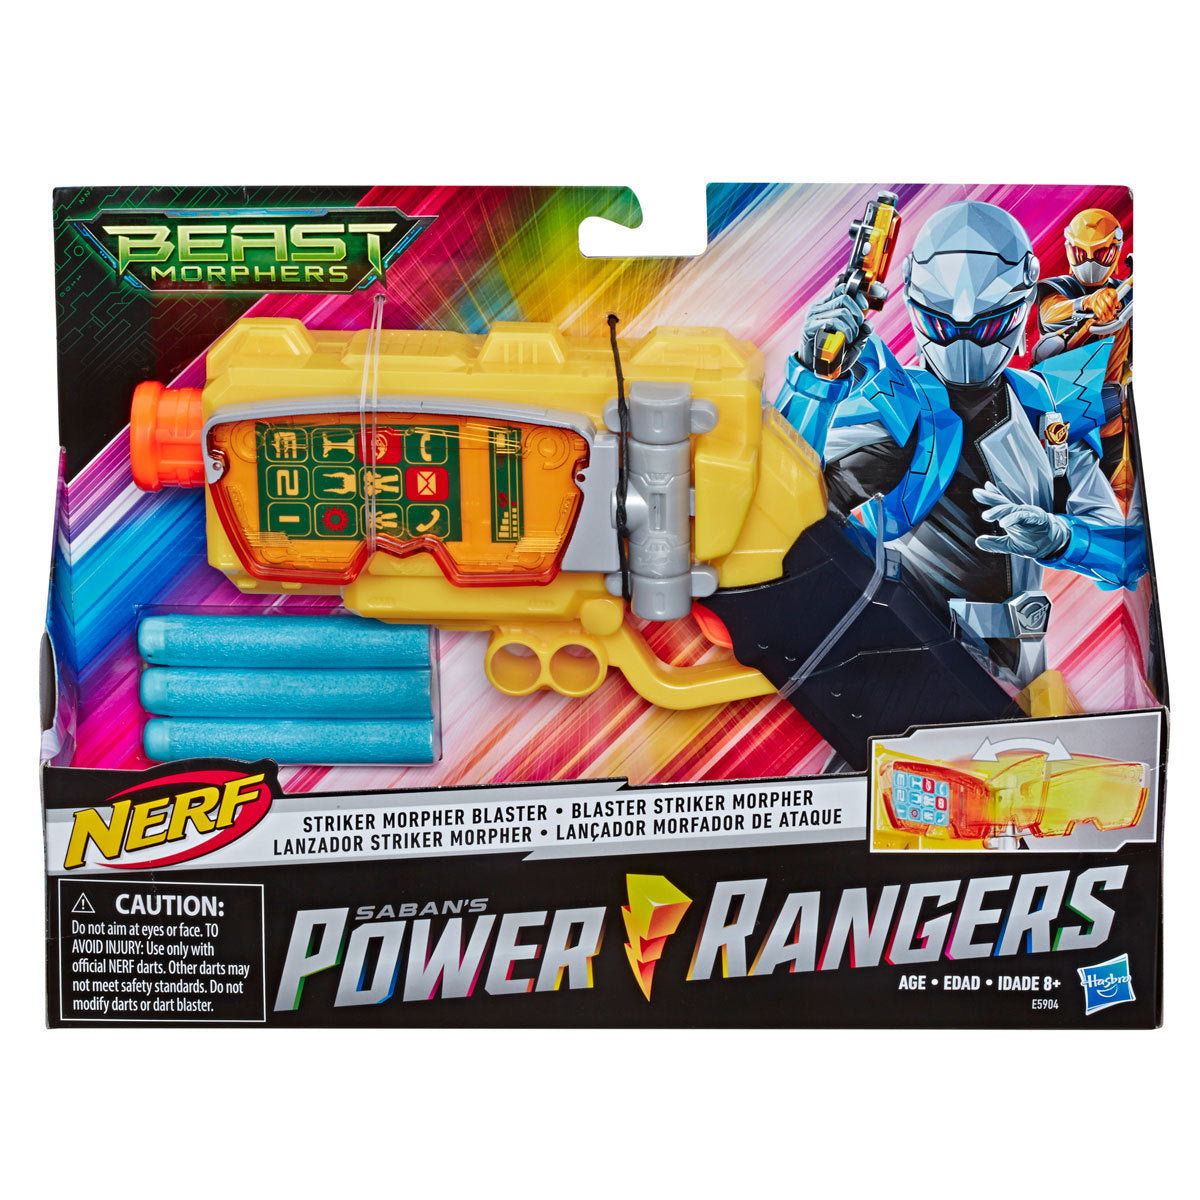 Power Rangers Beast Morphers: Nerf Blaster